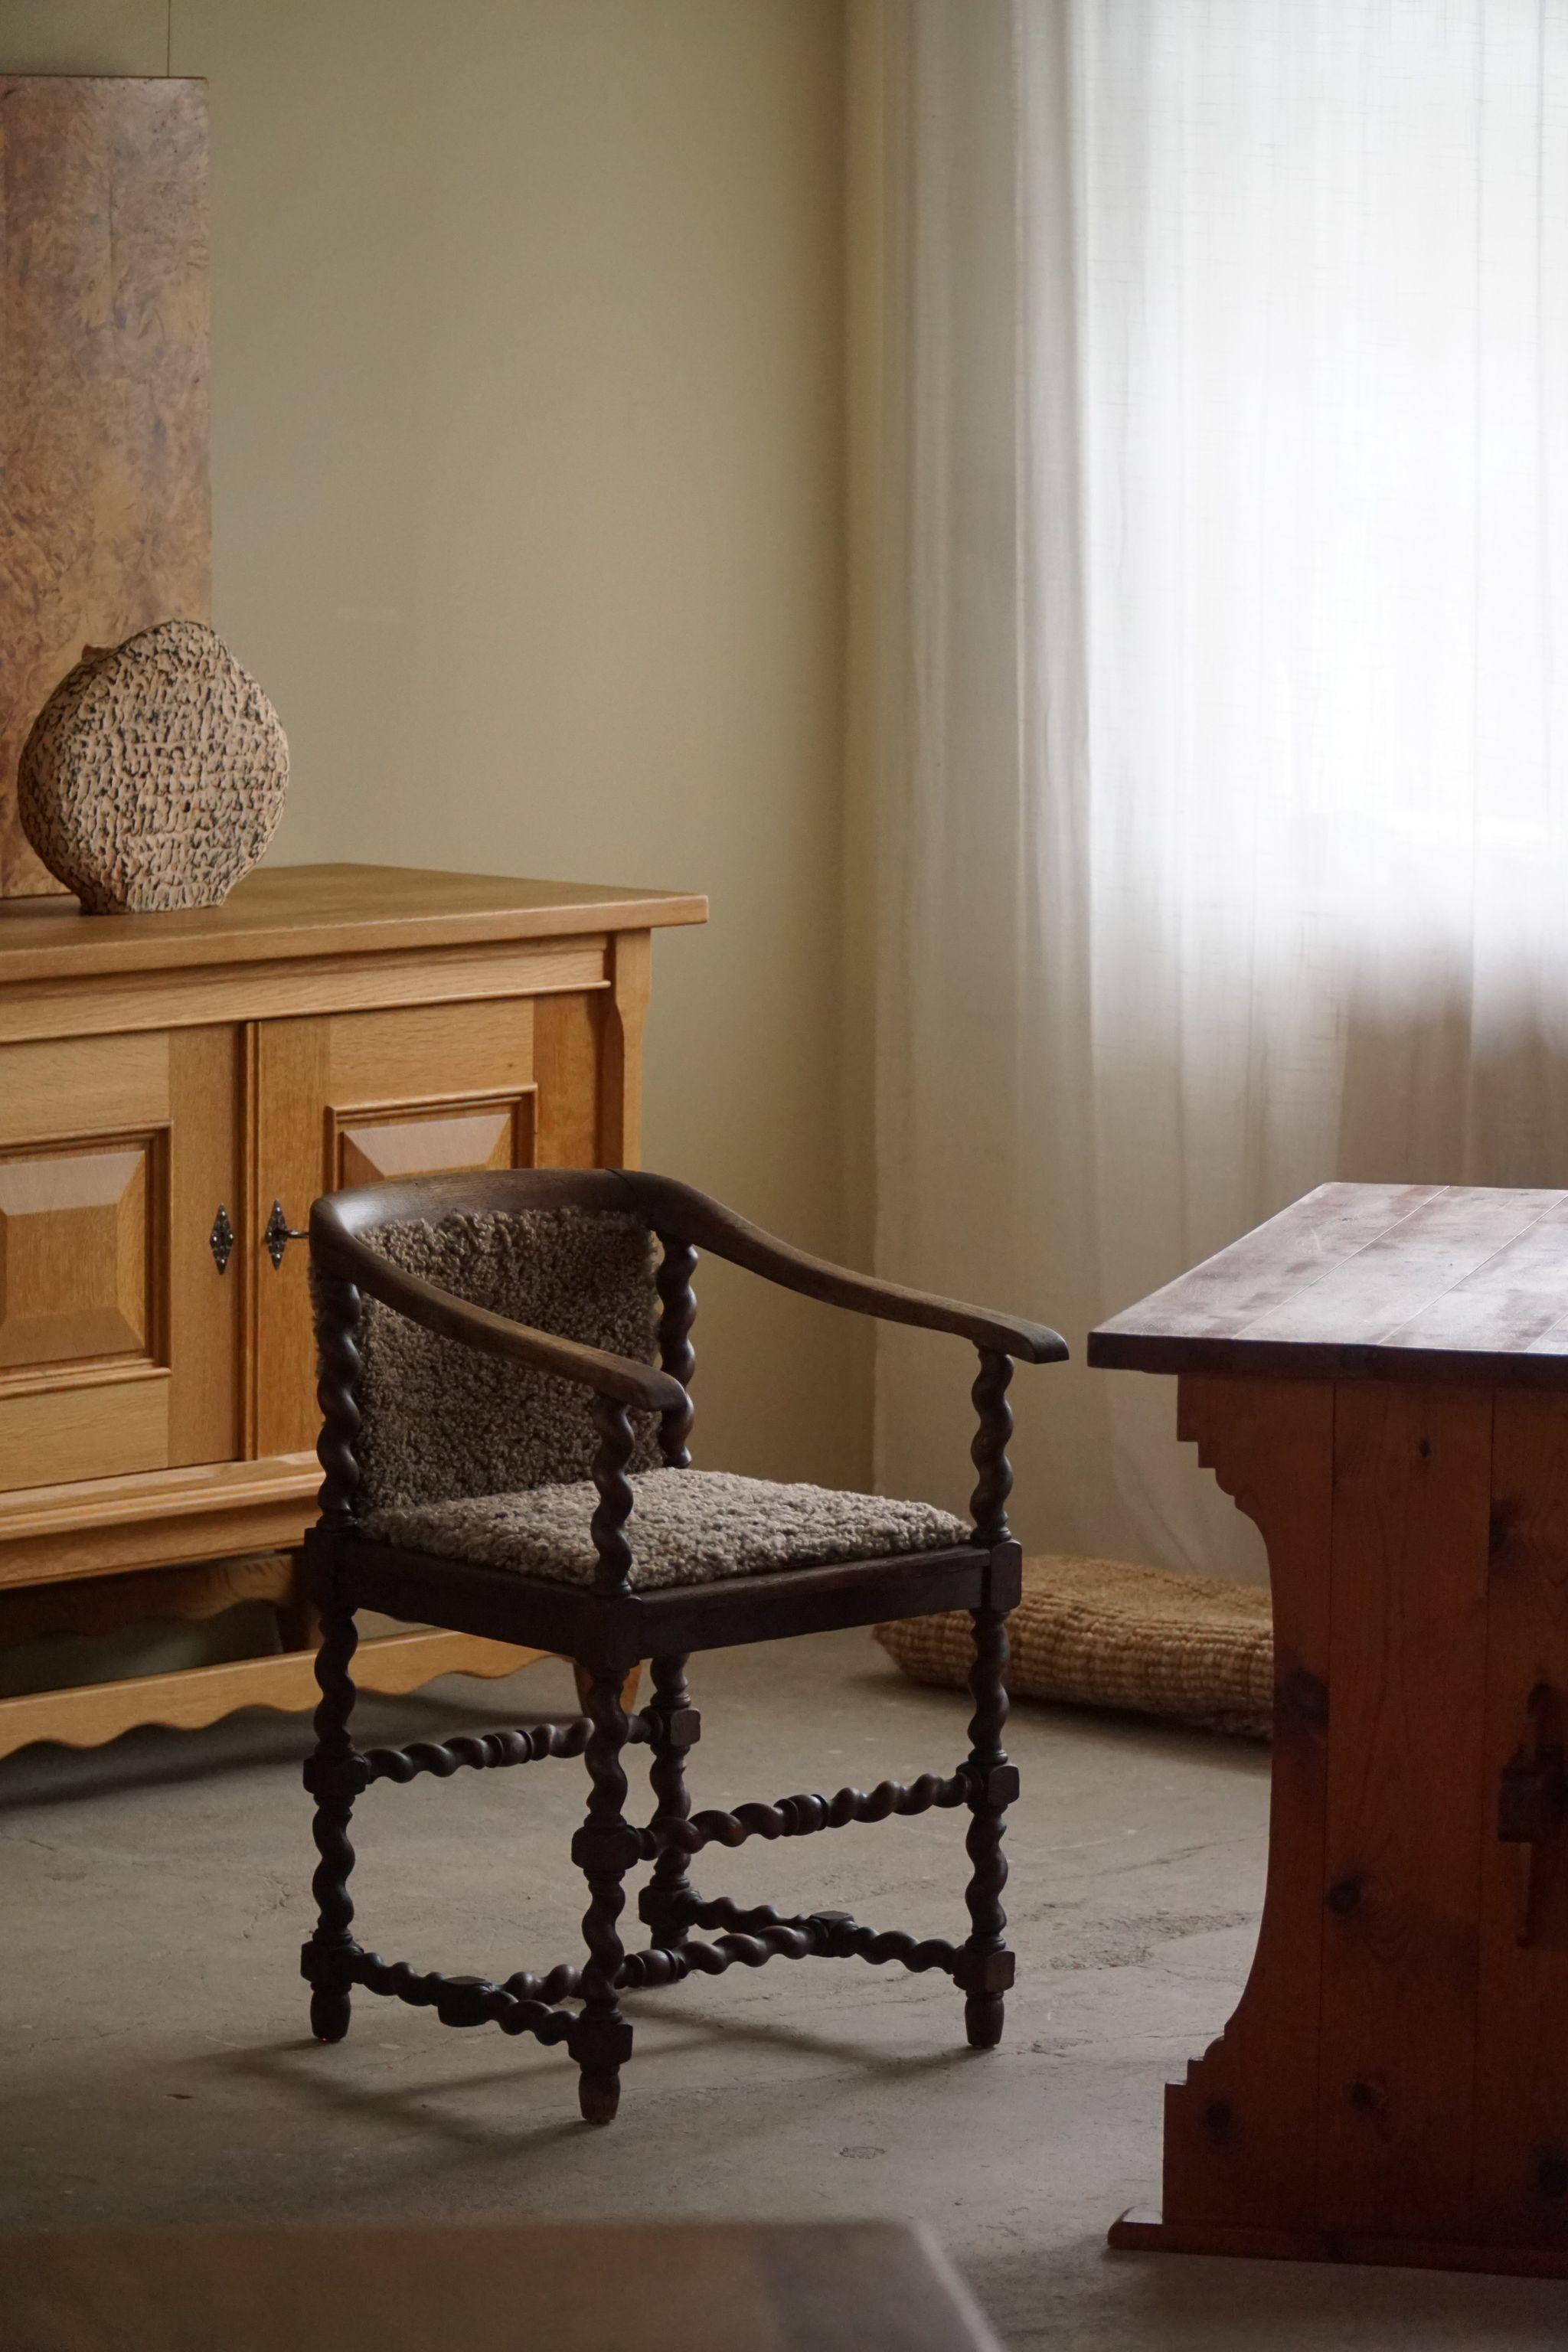 Ein bezaubernder französischer Armlehnstuhl aus massiver Eiche, Sitz und Rückenlehne neu gepolstert mit hochwertiger Lammfellwolle. In der zweiten Hälfte des 19. Jahrhunderts von einem französischen Kunsttischler in feiner Handarbeit gefertigt.